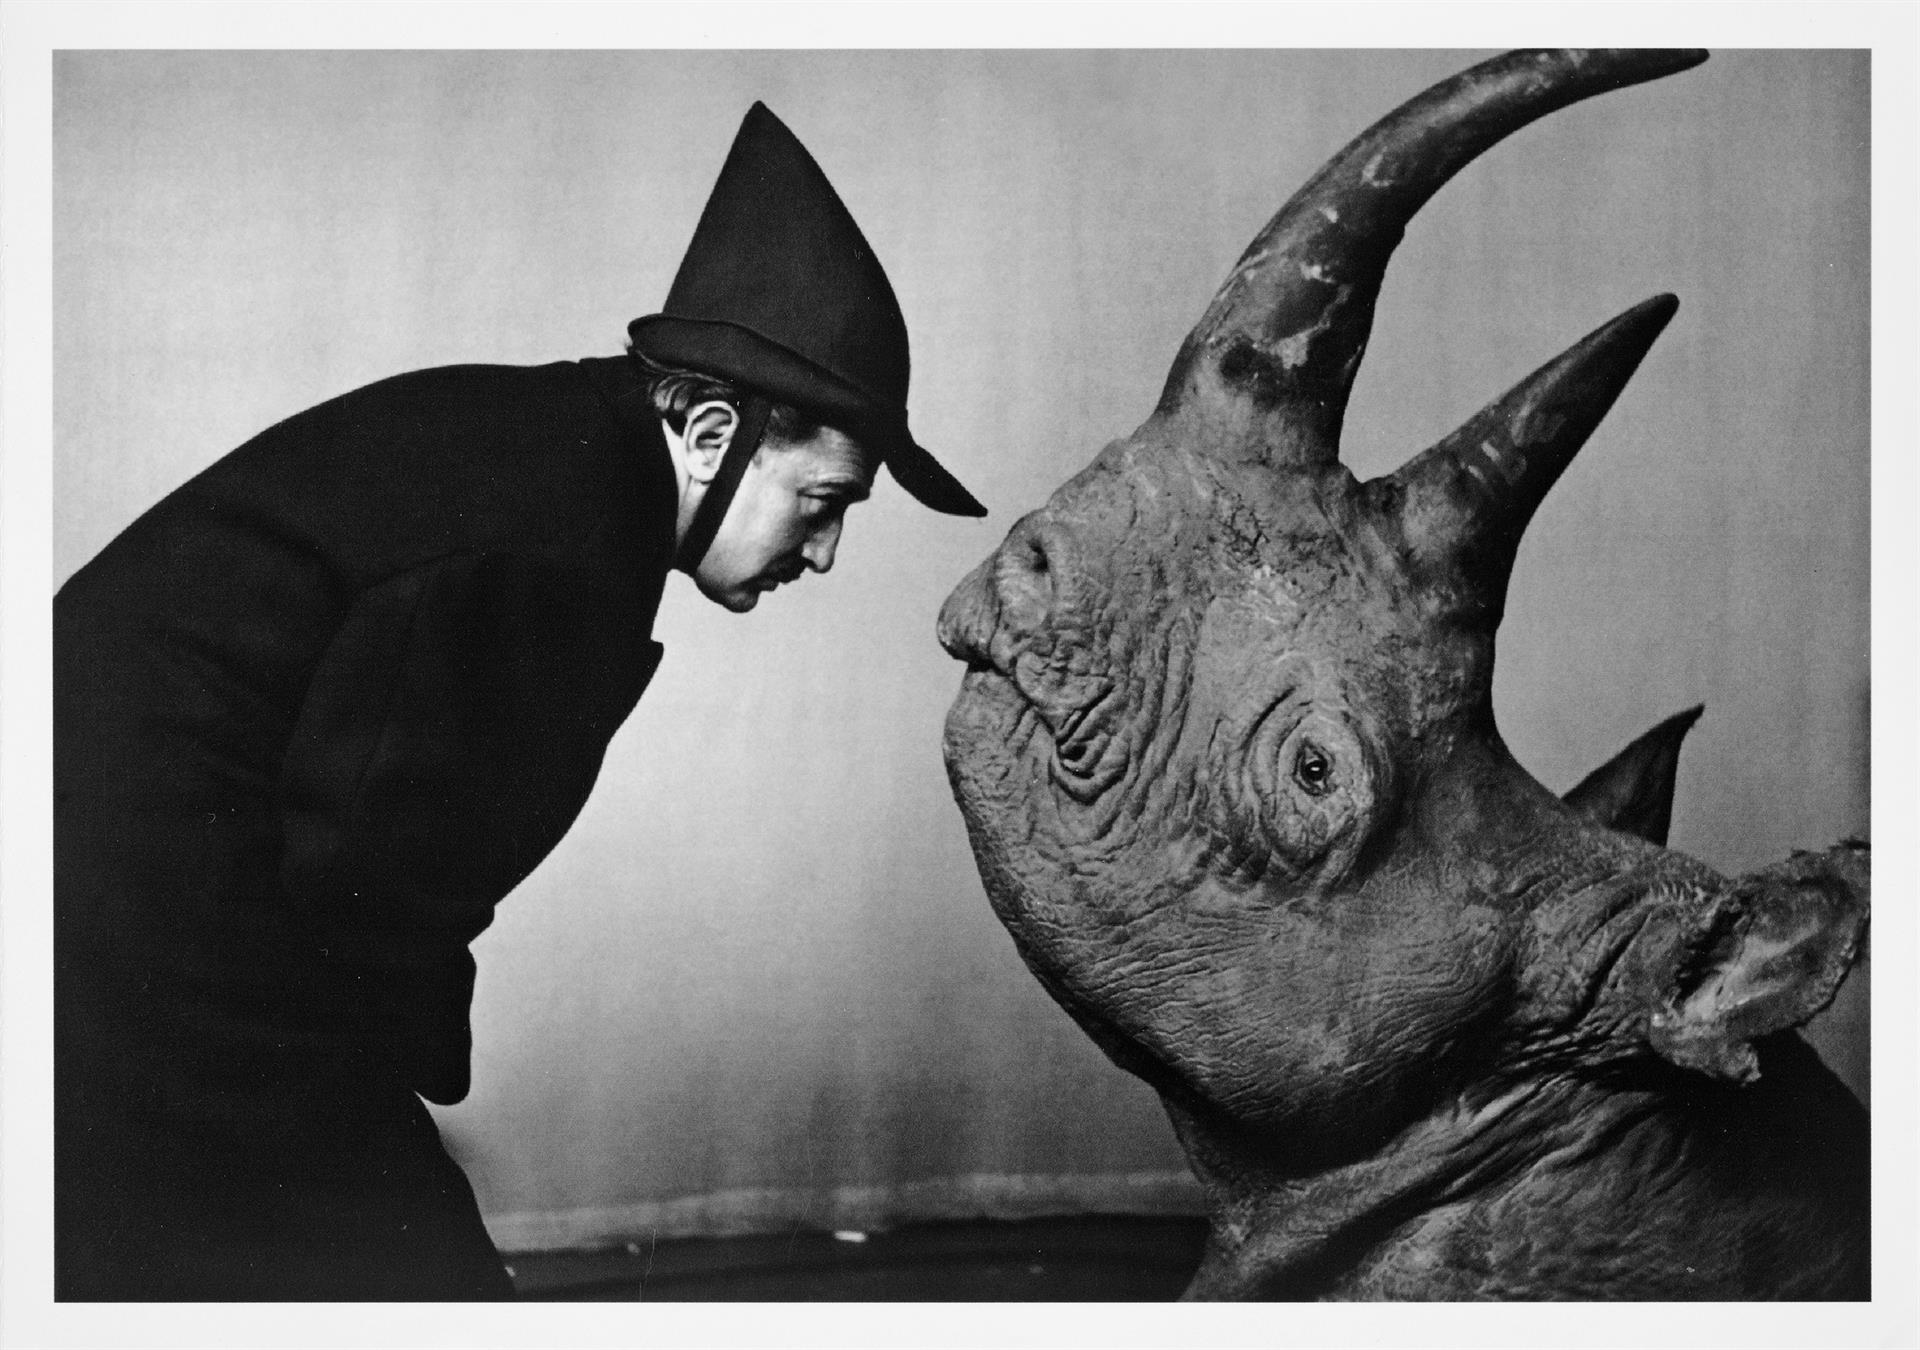 Pressebild 4_Philippe Halsman, Salvador Dalí mit Rhinozeros, 1956, Fotografie, Privat-sammlung, © Courtesy Heinz Joachim Kummer-Stiftung, Foto: Jürgen Vogel für das Max Ernst Museum Brühl des LVR